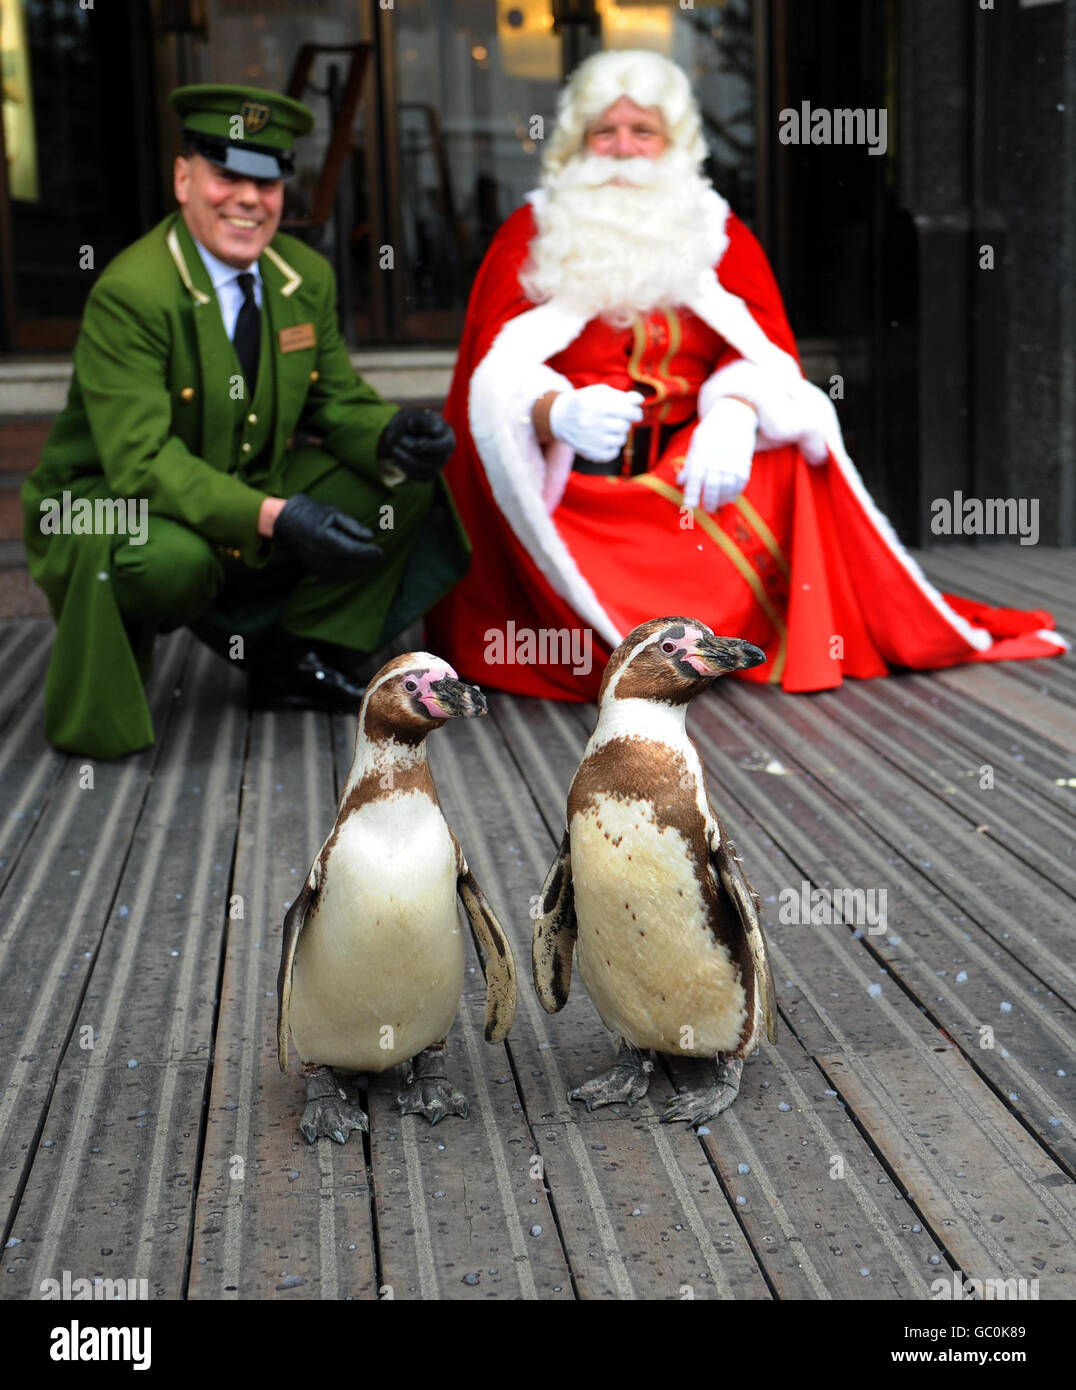 Ein Paar Humboldt-Pinguine locken im Harrod's, London, ein Publikum an, wo sie anlässlich der Eröffnung der Weihnachtswelt des Kaufhauses in Knightsbridge von 'Santa Claus' und einem Portier von Harrod begrüßt wurden. Stockfoto